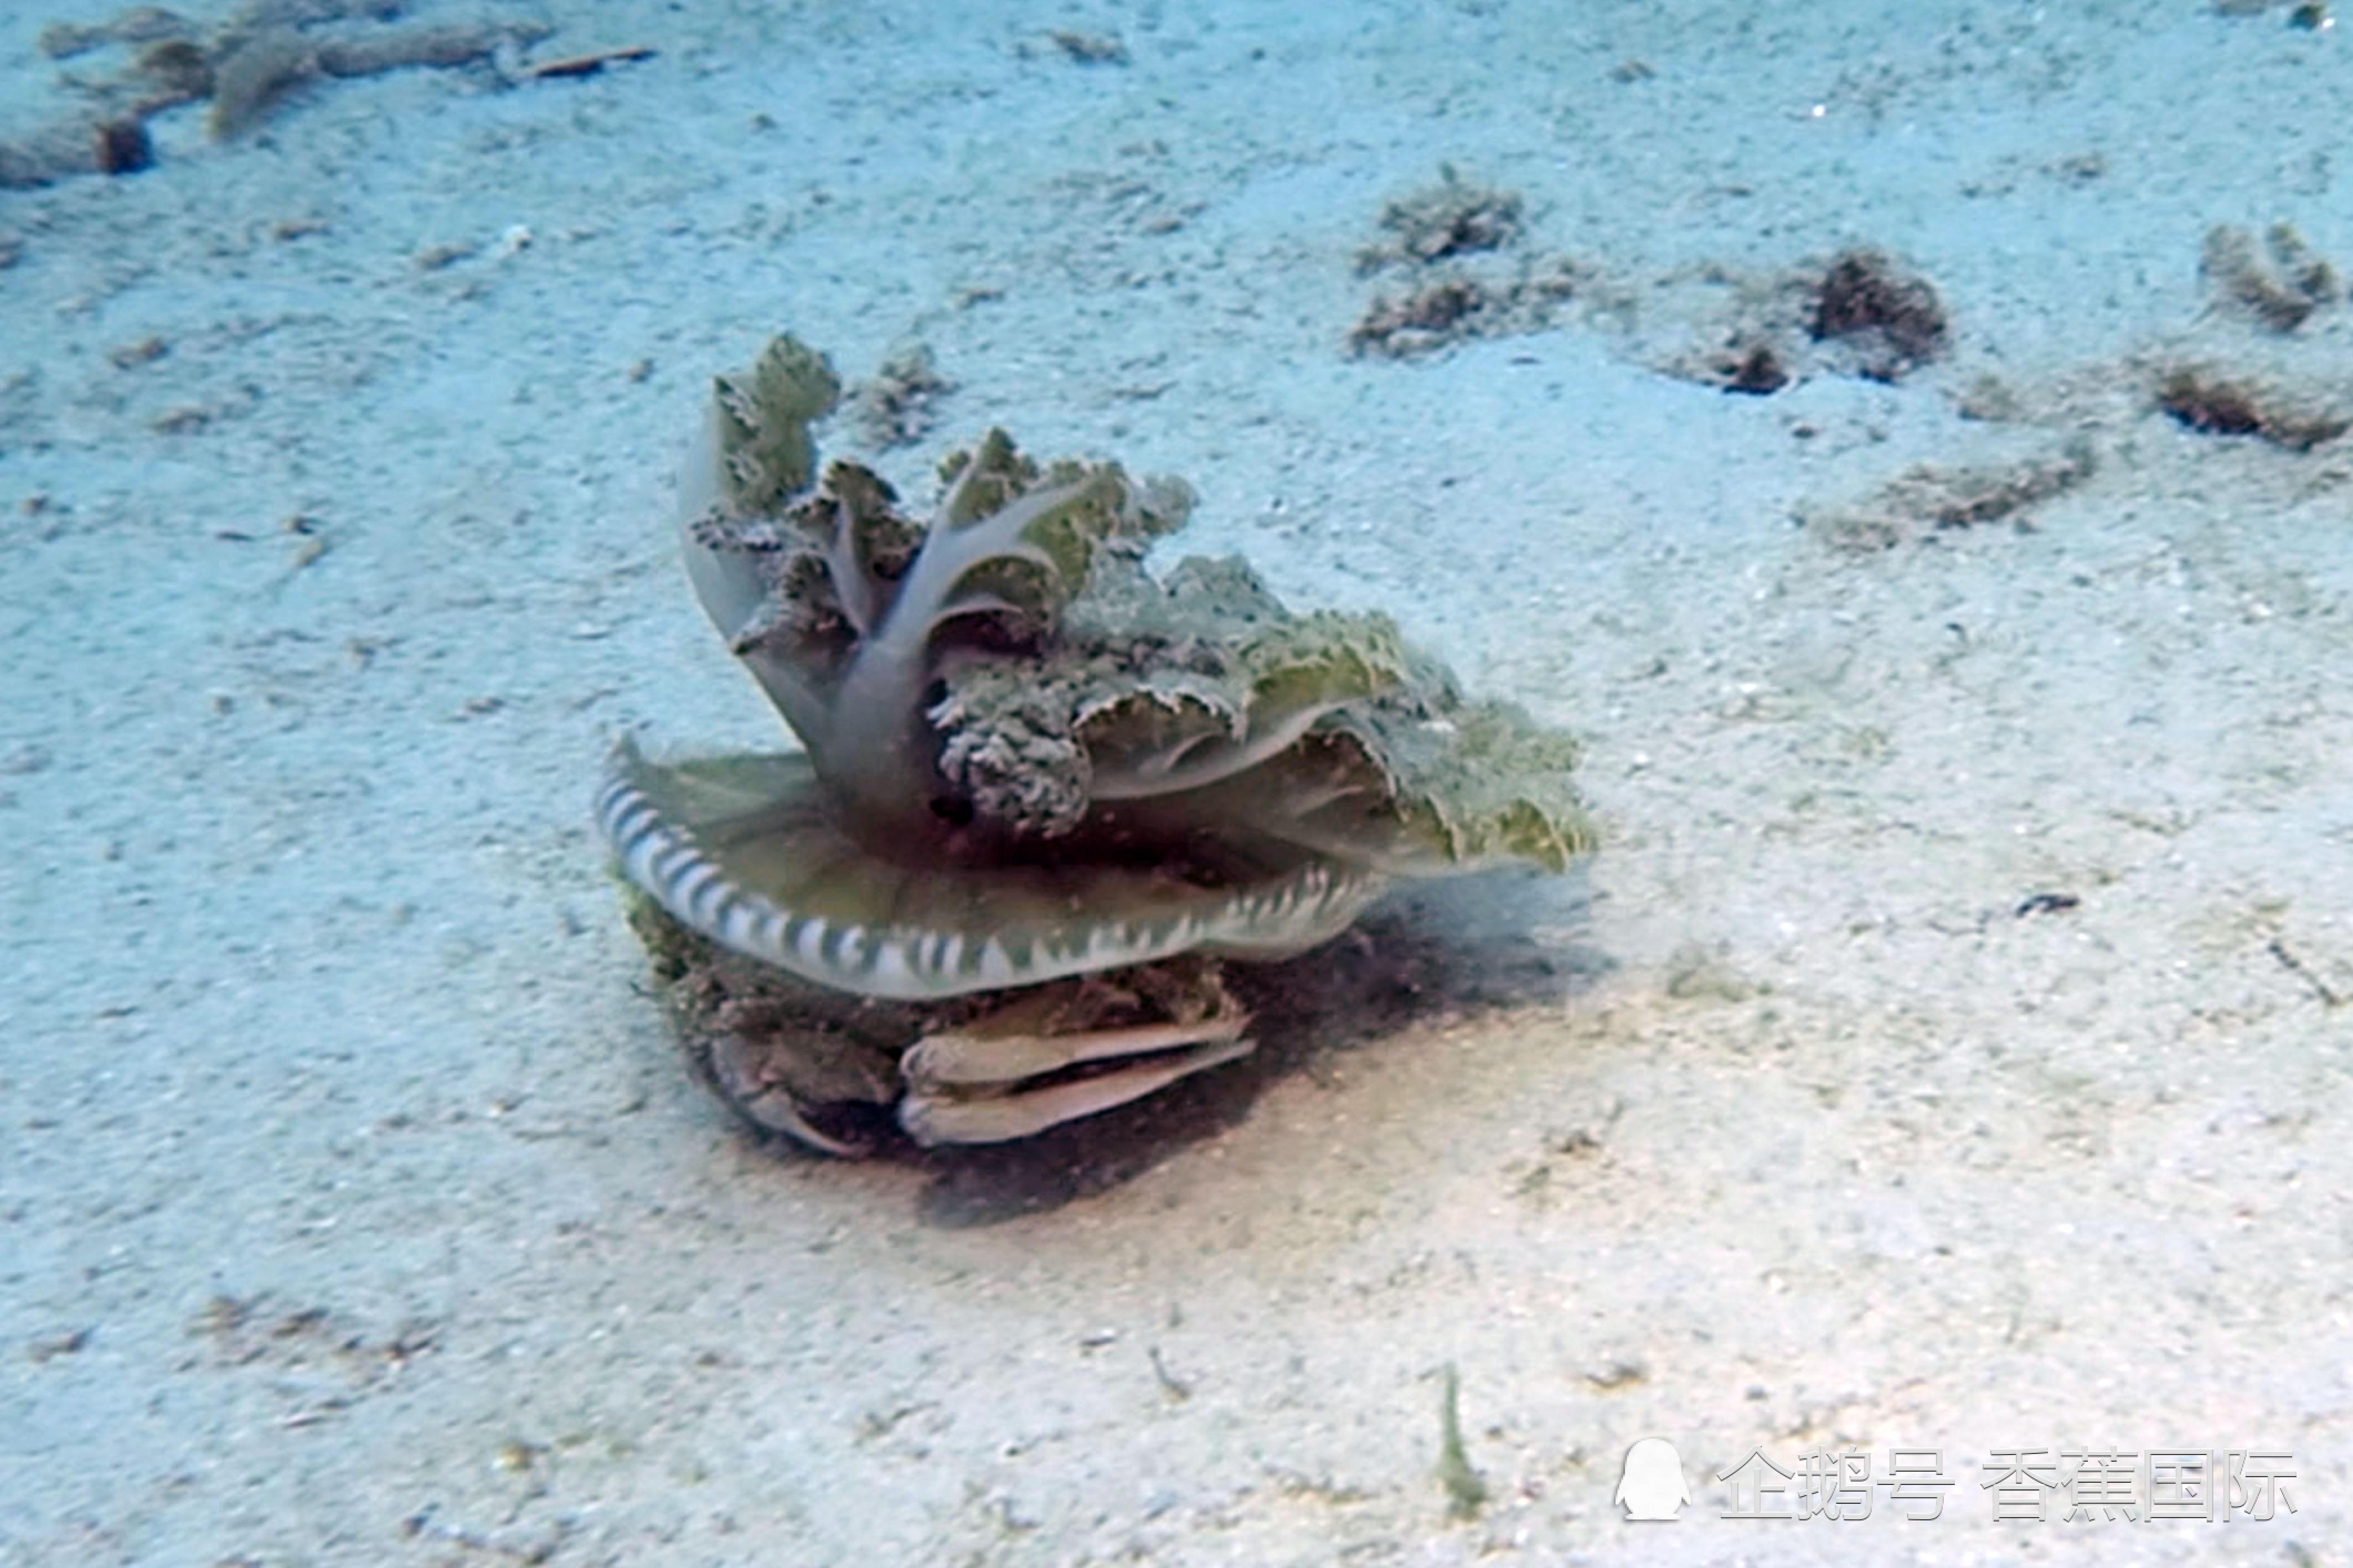 大连东海论坛-东海巨型螃蟹震惊世界！这只巨蟹竟然达到两米大小